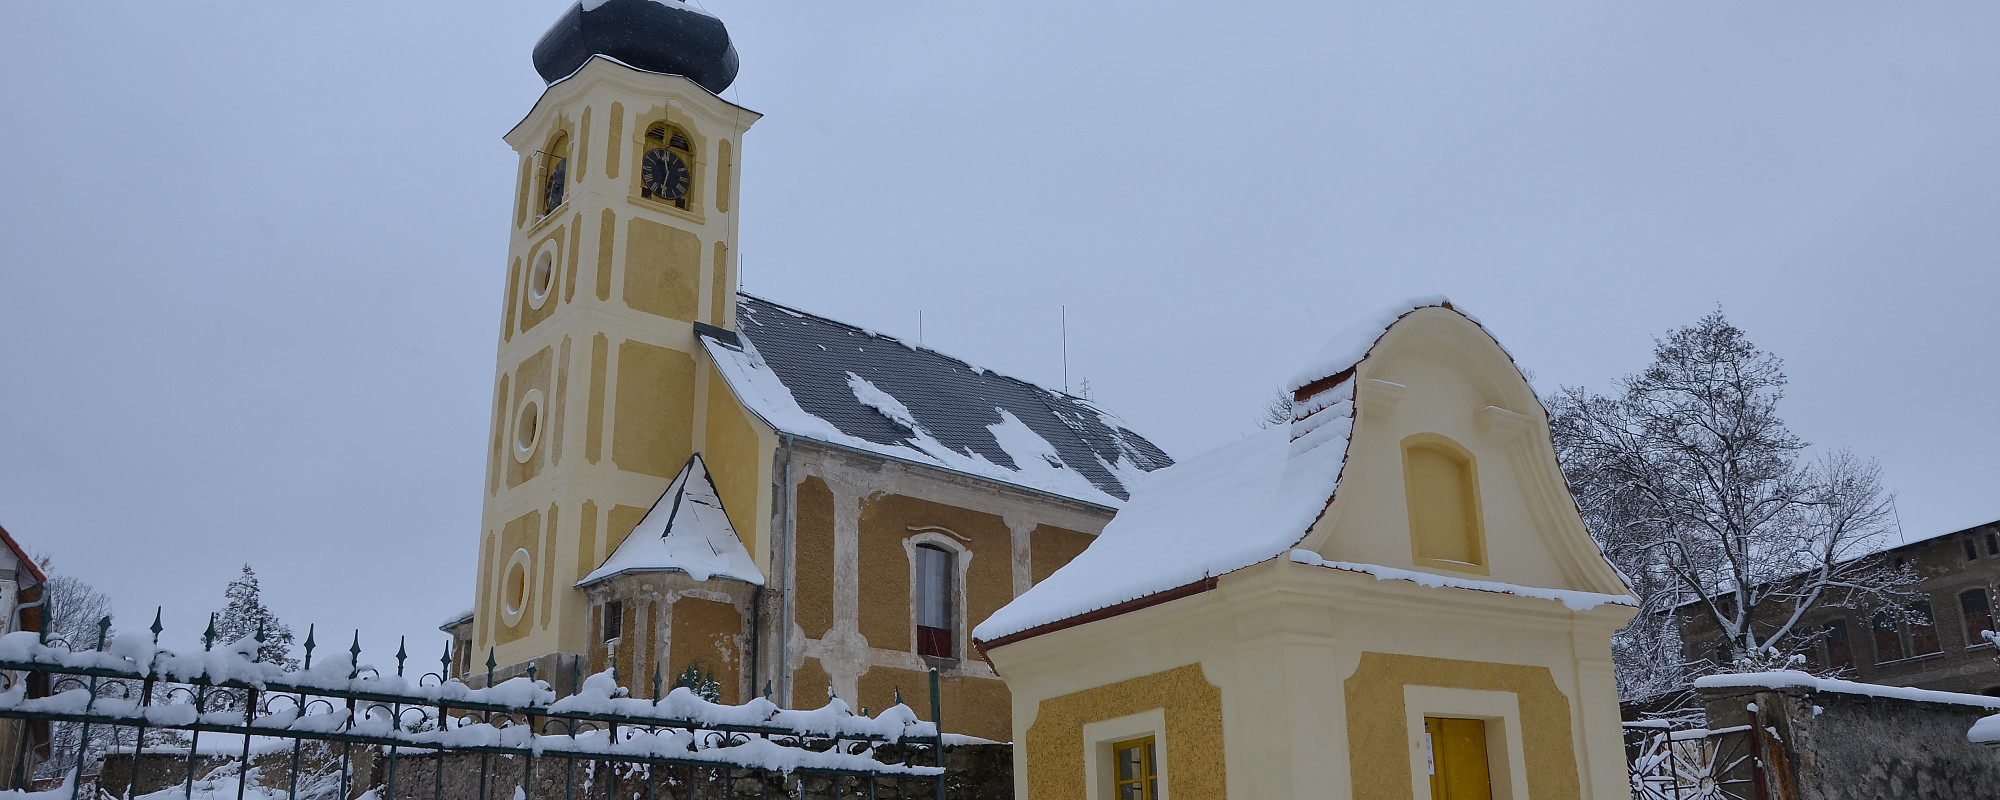 Kaple a kostel